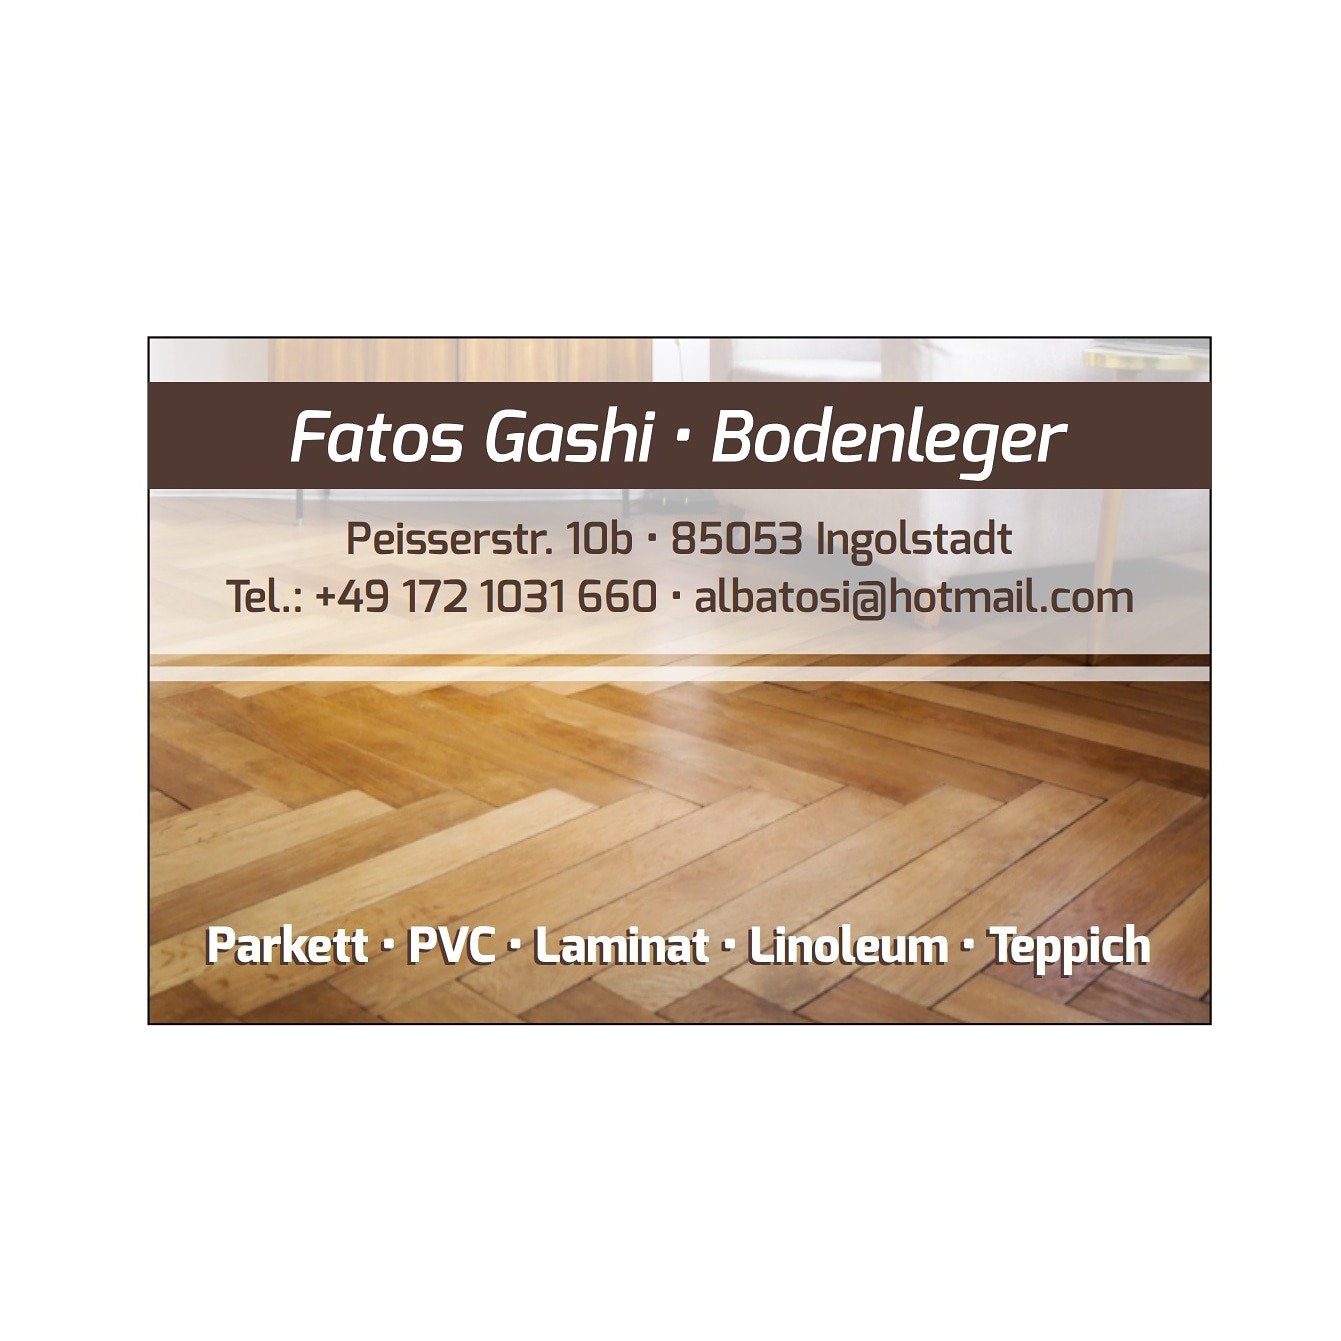 Fatos Gashi Bodenleger Inh. Fatos Goshi in Ingolstadt an der Donau - Logo